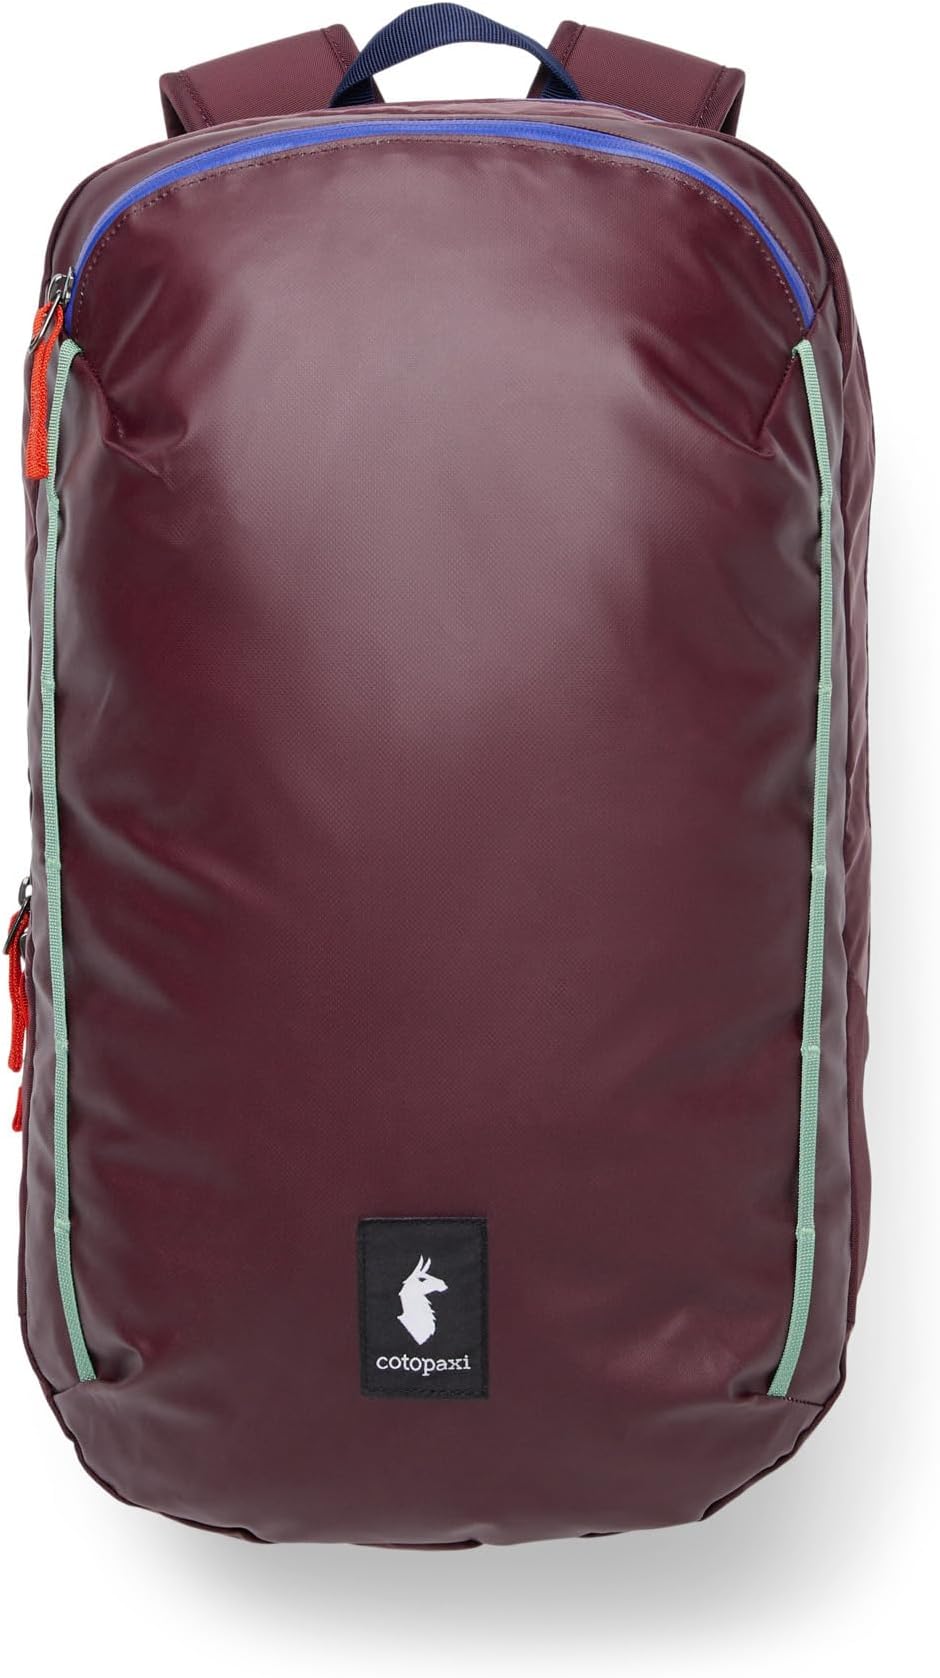 Рюкзак Vaya 18L Backpack - Cada Dia Cotopaxi, цвет Wine рюкзак uag backpack 13 18l grey